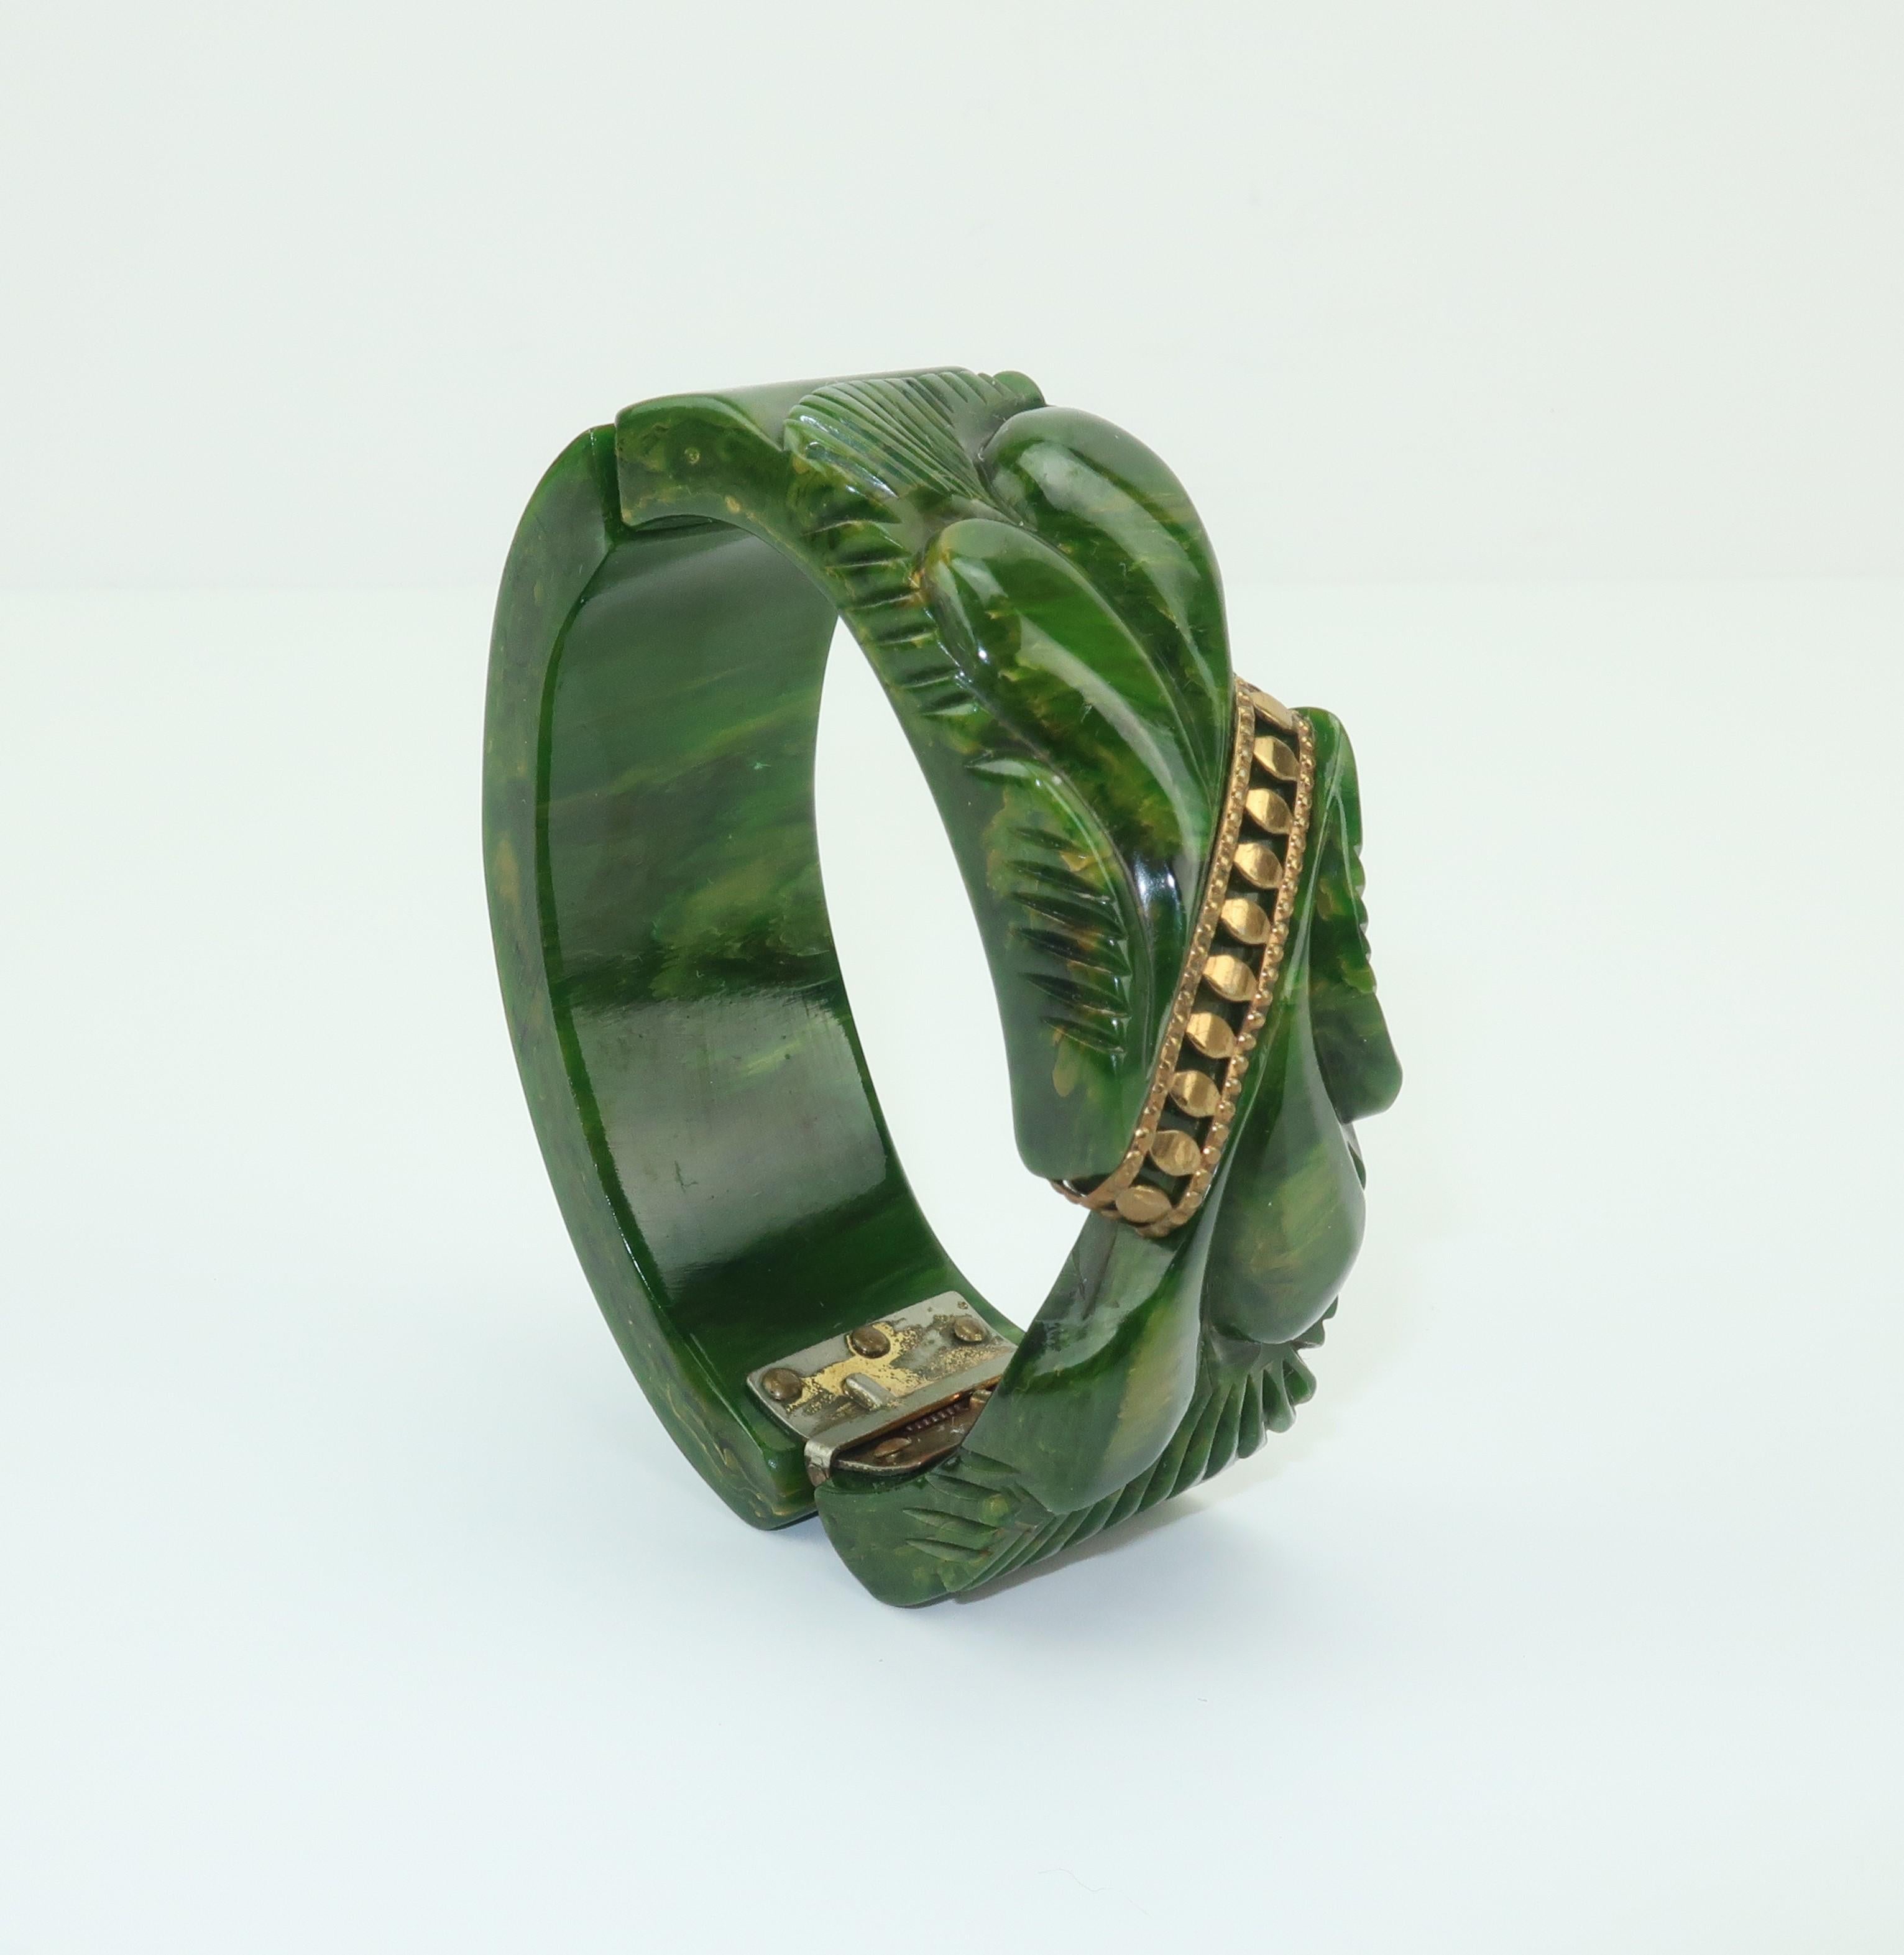 C.1940 Carved Green Bakelite Clamper Bracelet With Gold Details 6